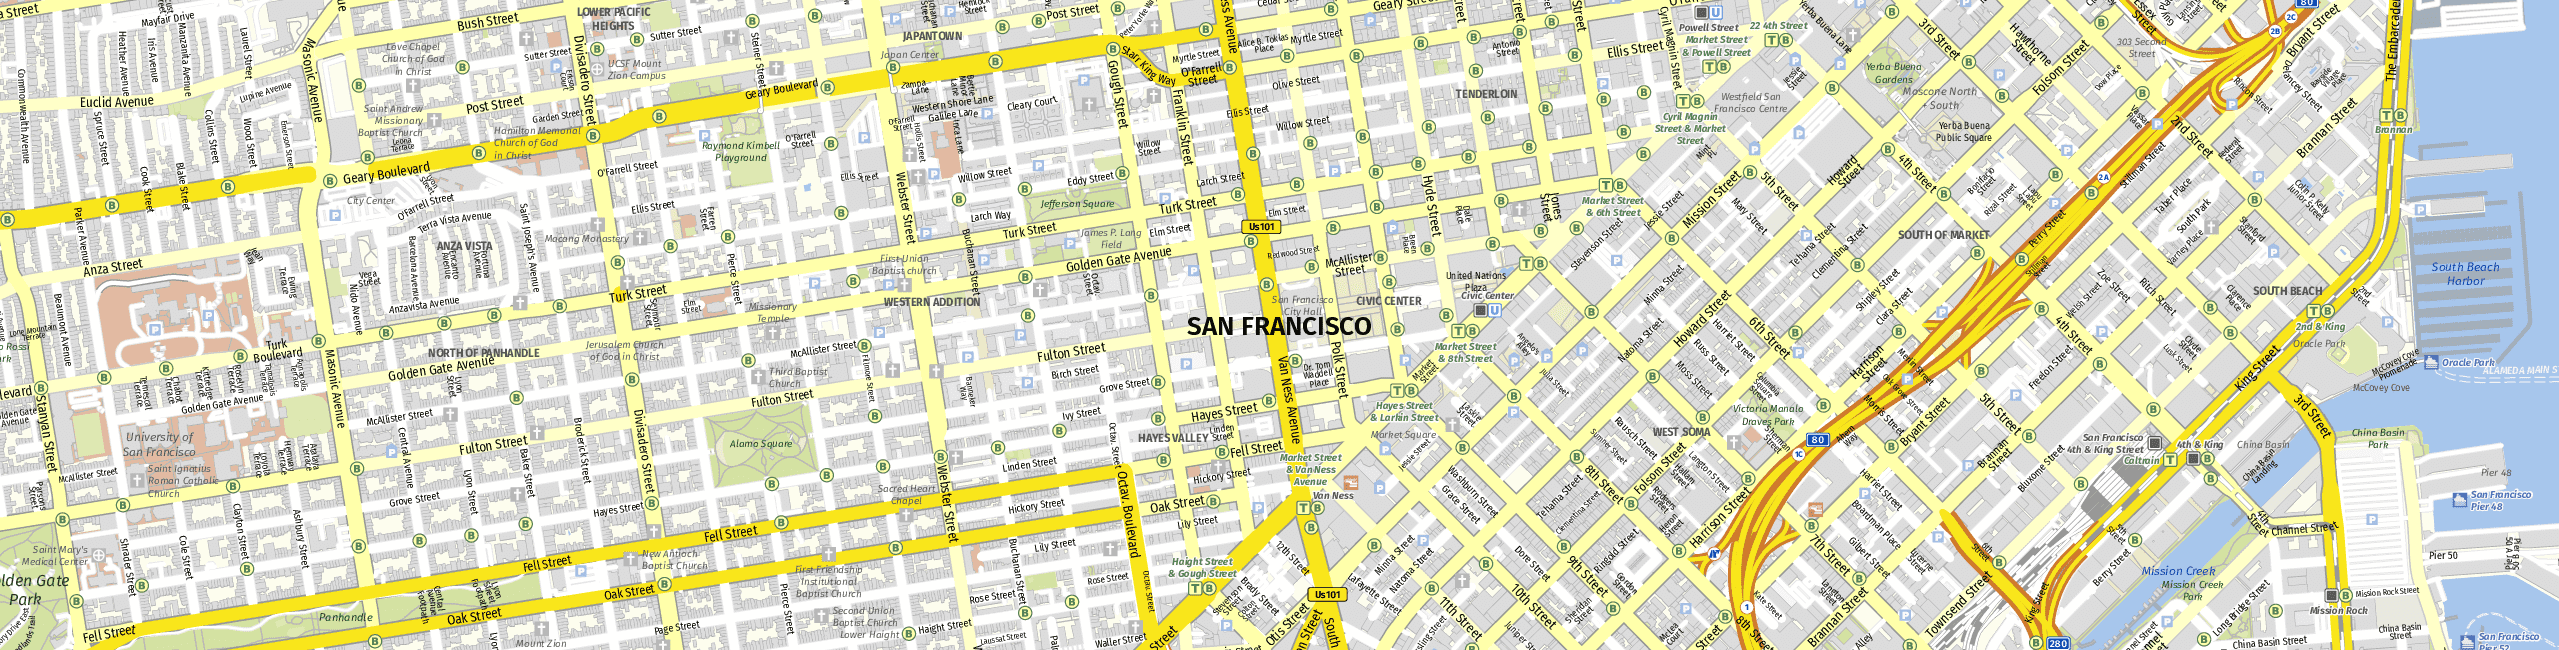 Stadtplan San Francisco zum Downloaden.